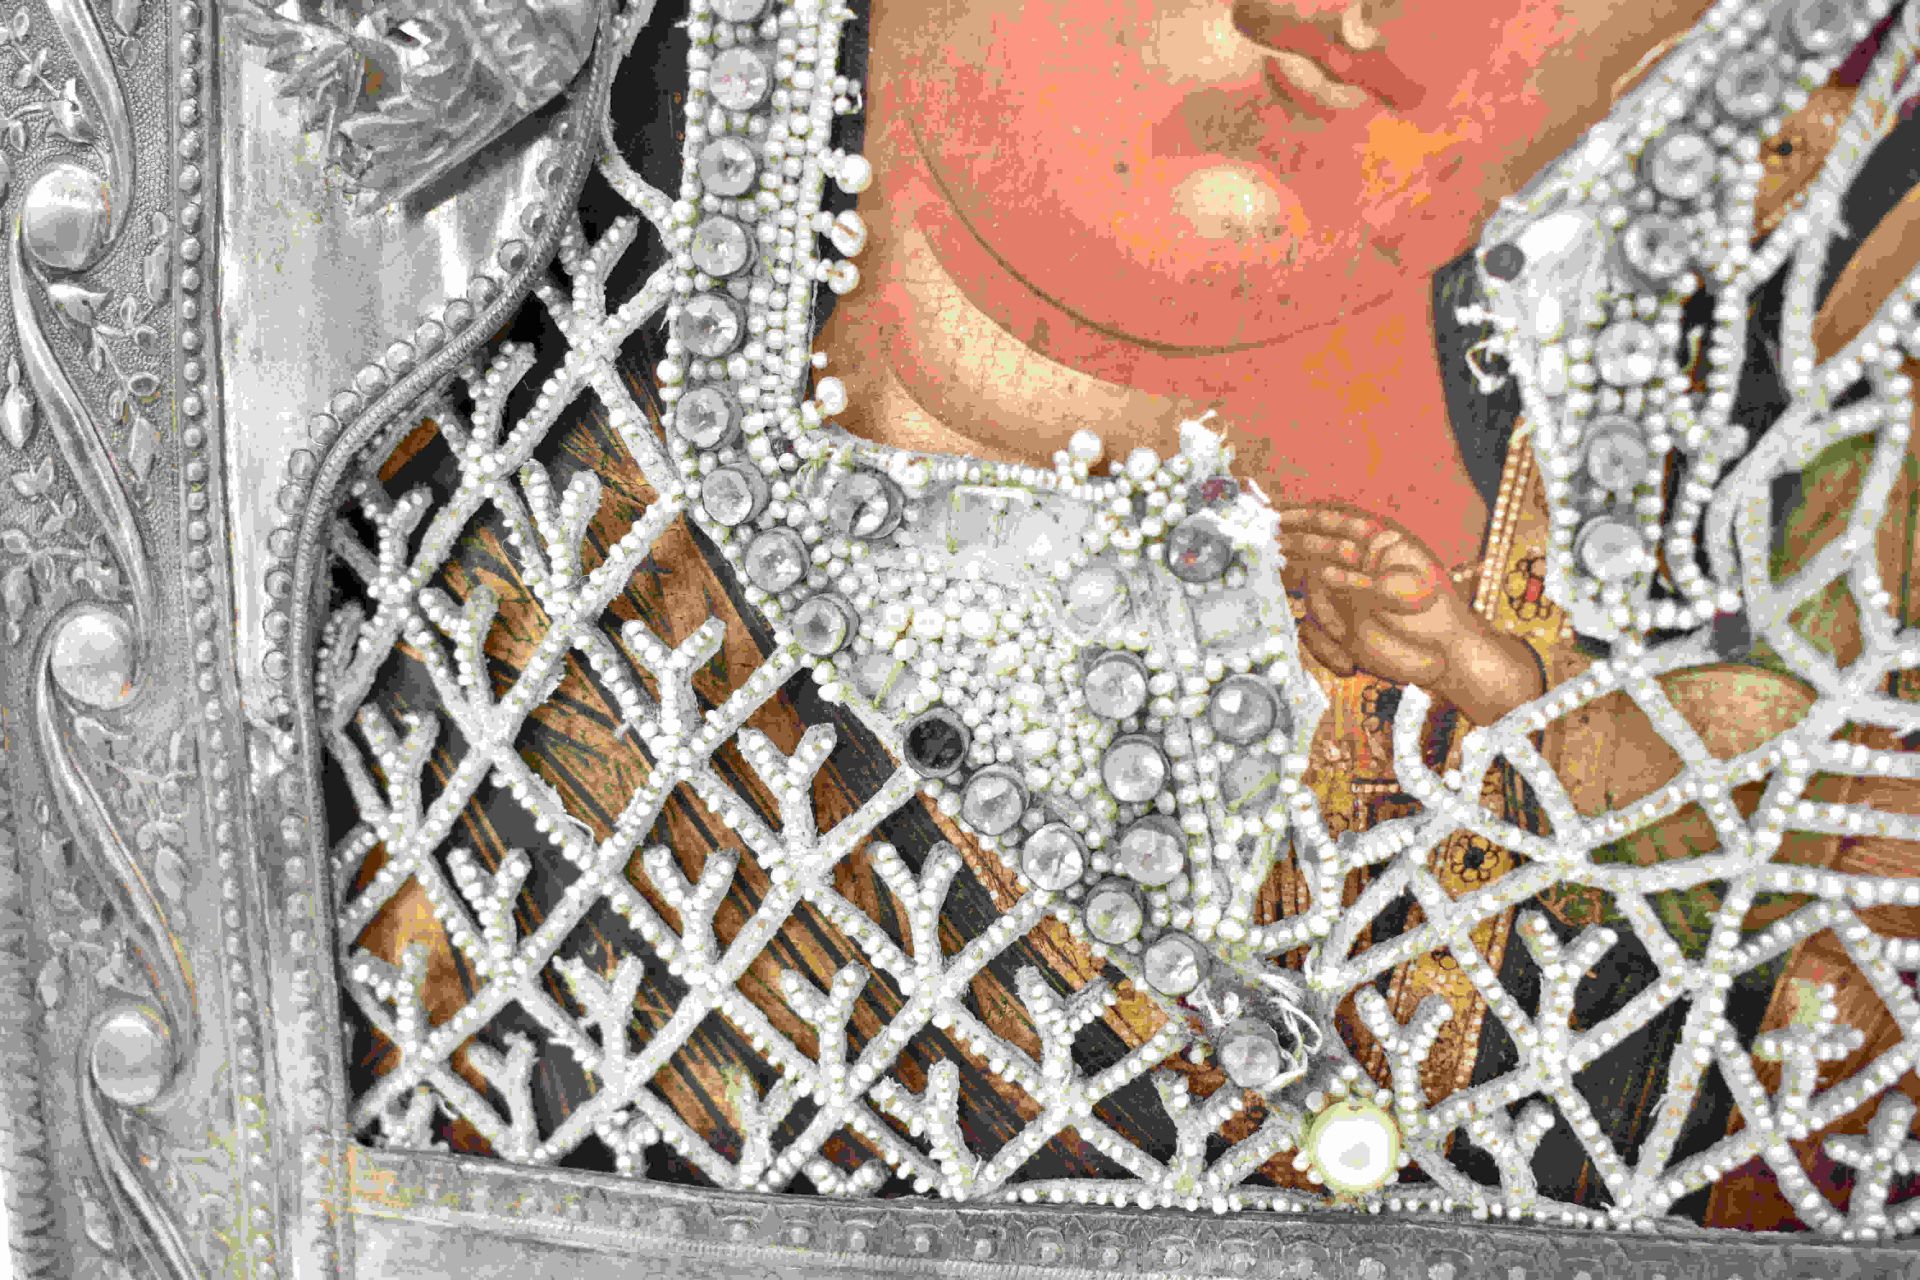 Marienikone mit Perlkleid und Silberoklad, St. Petersburg, frühes 19. Jh. - Bild 15 aus 18